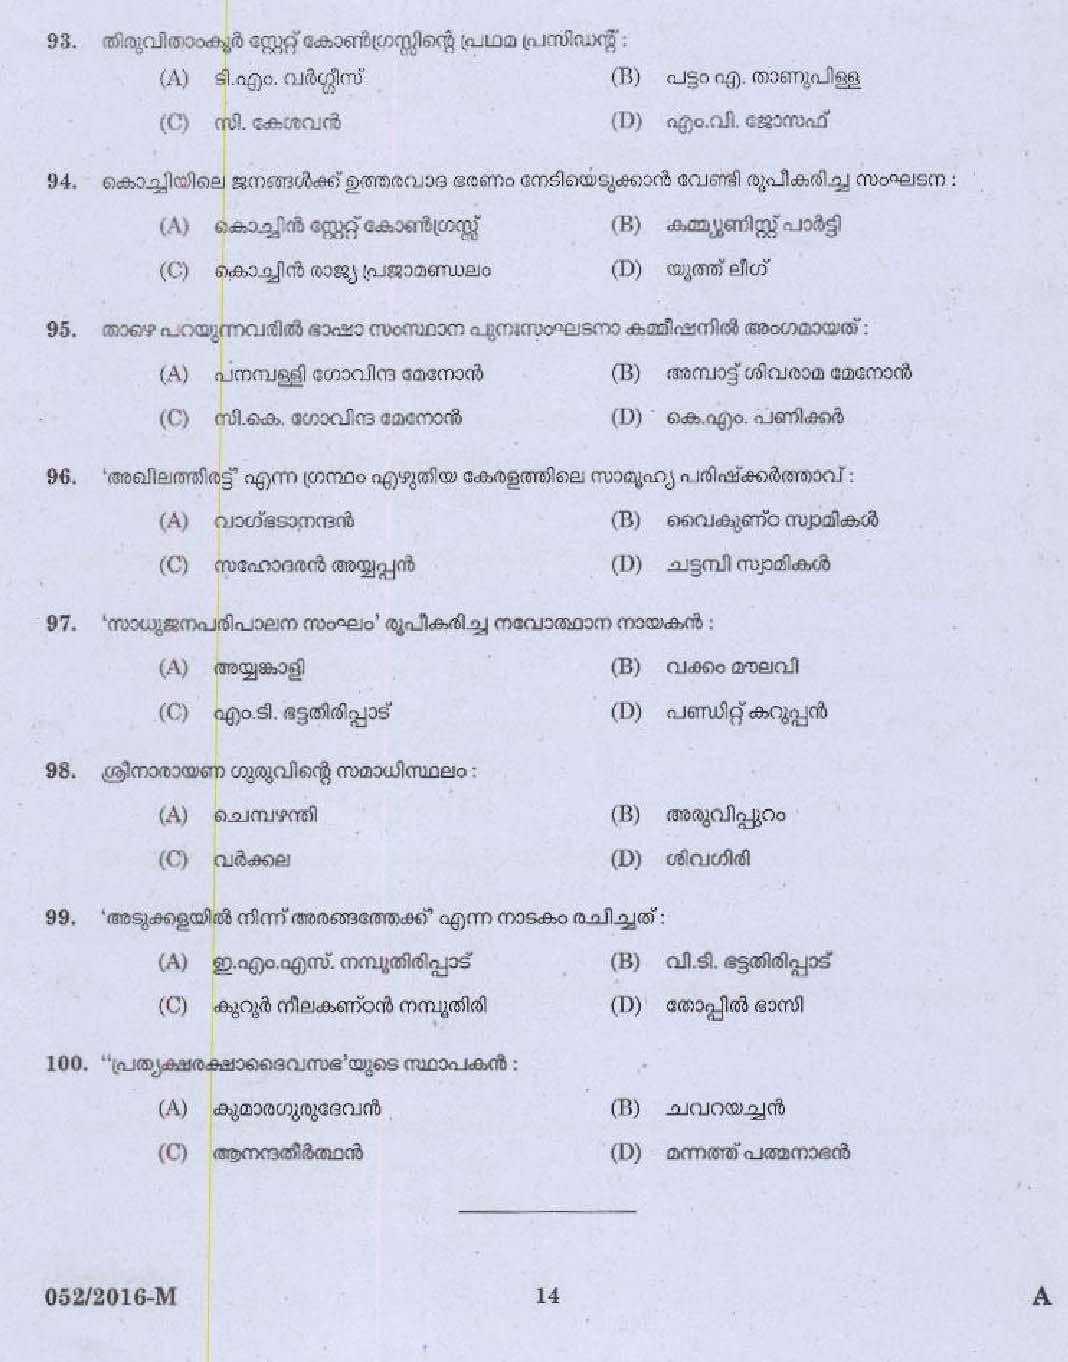 Kerala PSC Driver Grade II Exam 2016 Question Paper Code 0522016 M 12